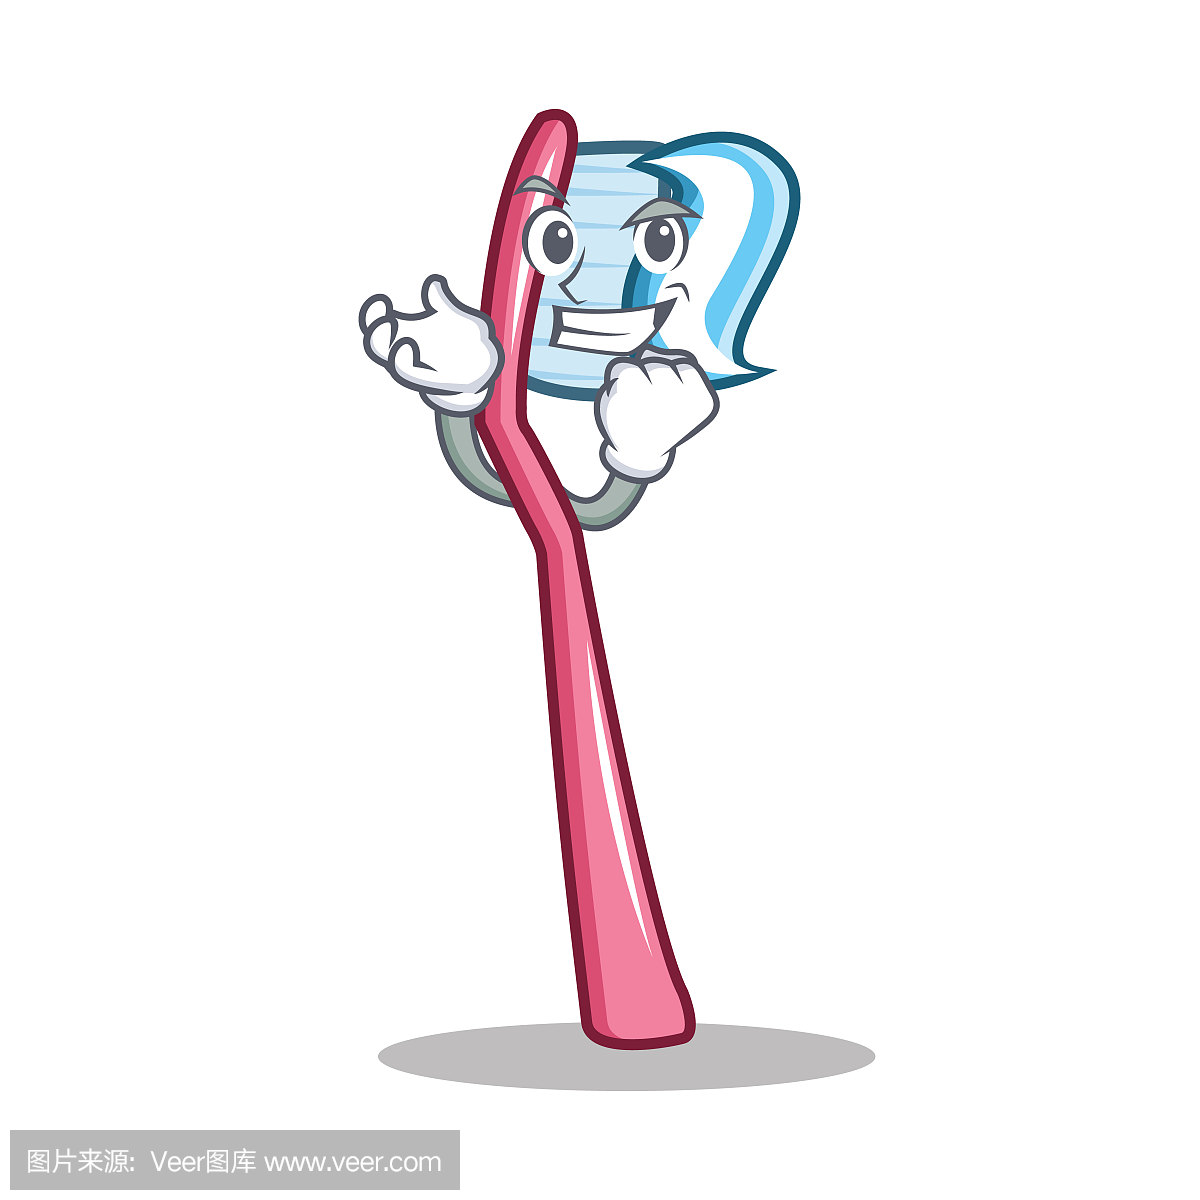 成功的牙刷人物卡通风格